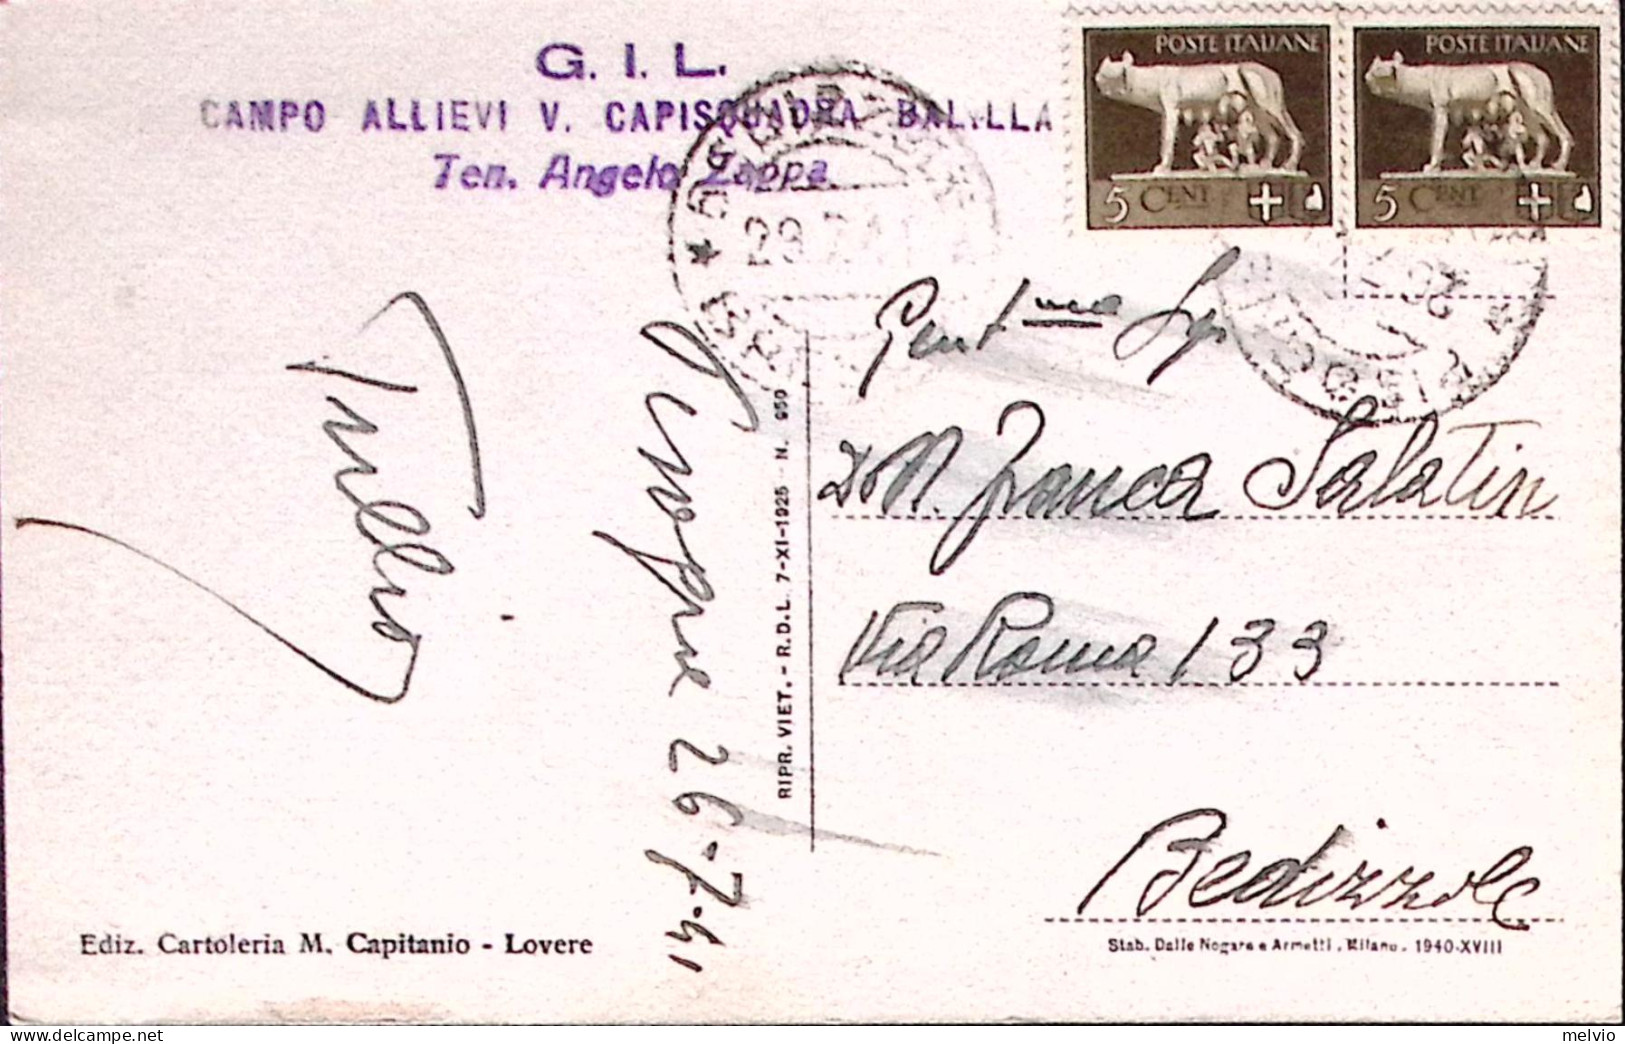 1941-LAGO D'ISEO Viaggiata (26.9) Al Verso Bollo G.I.L. Campo Allievi V. Capisqu - Brescia